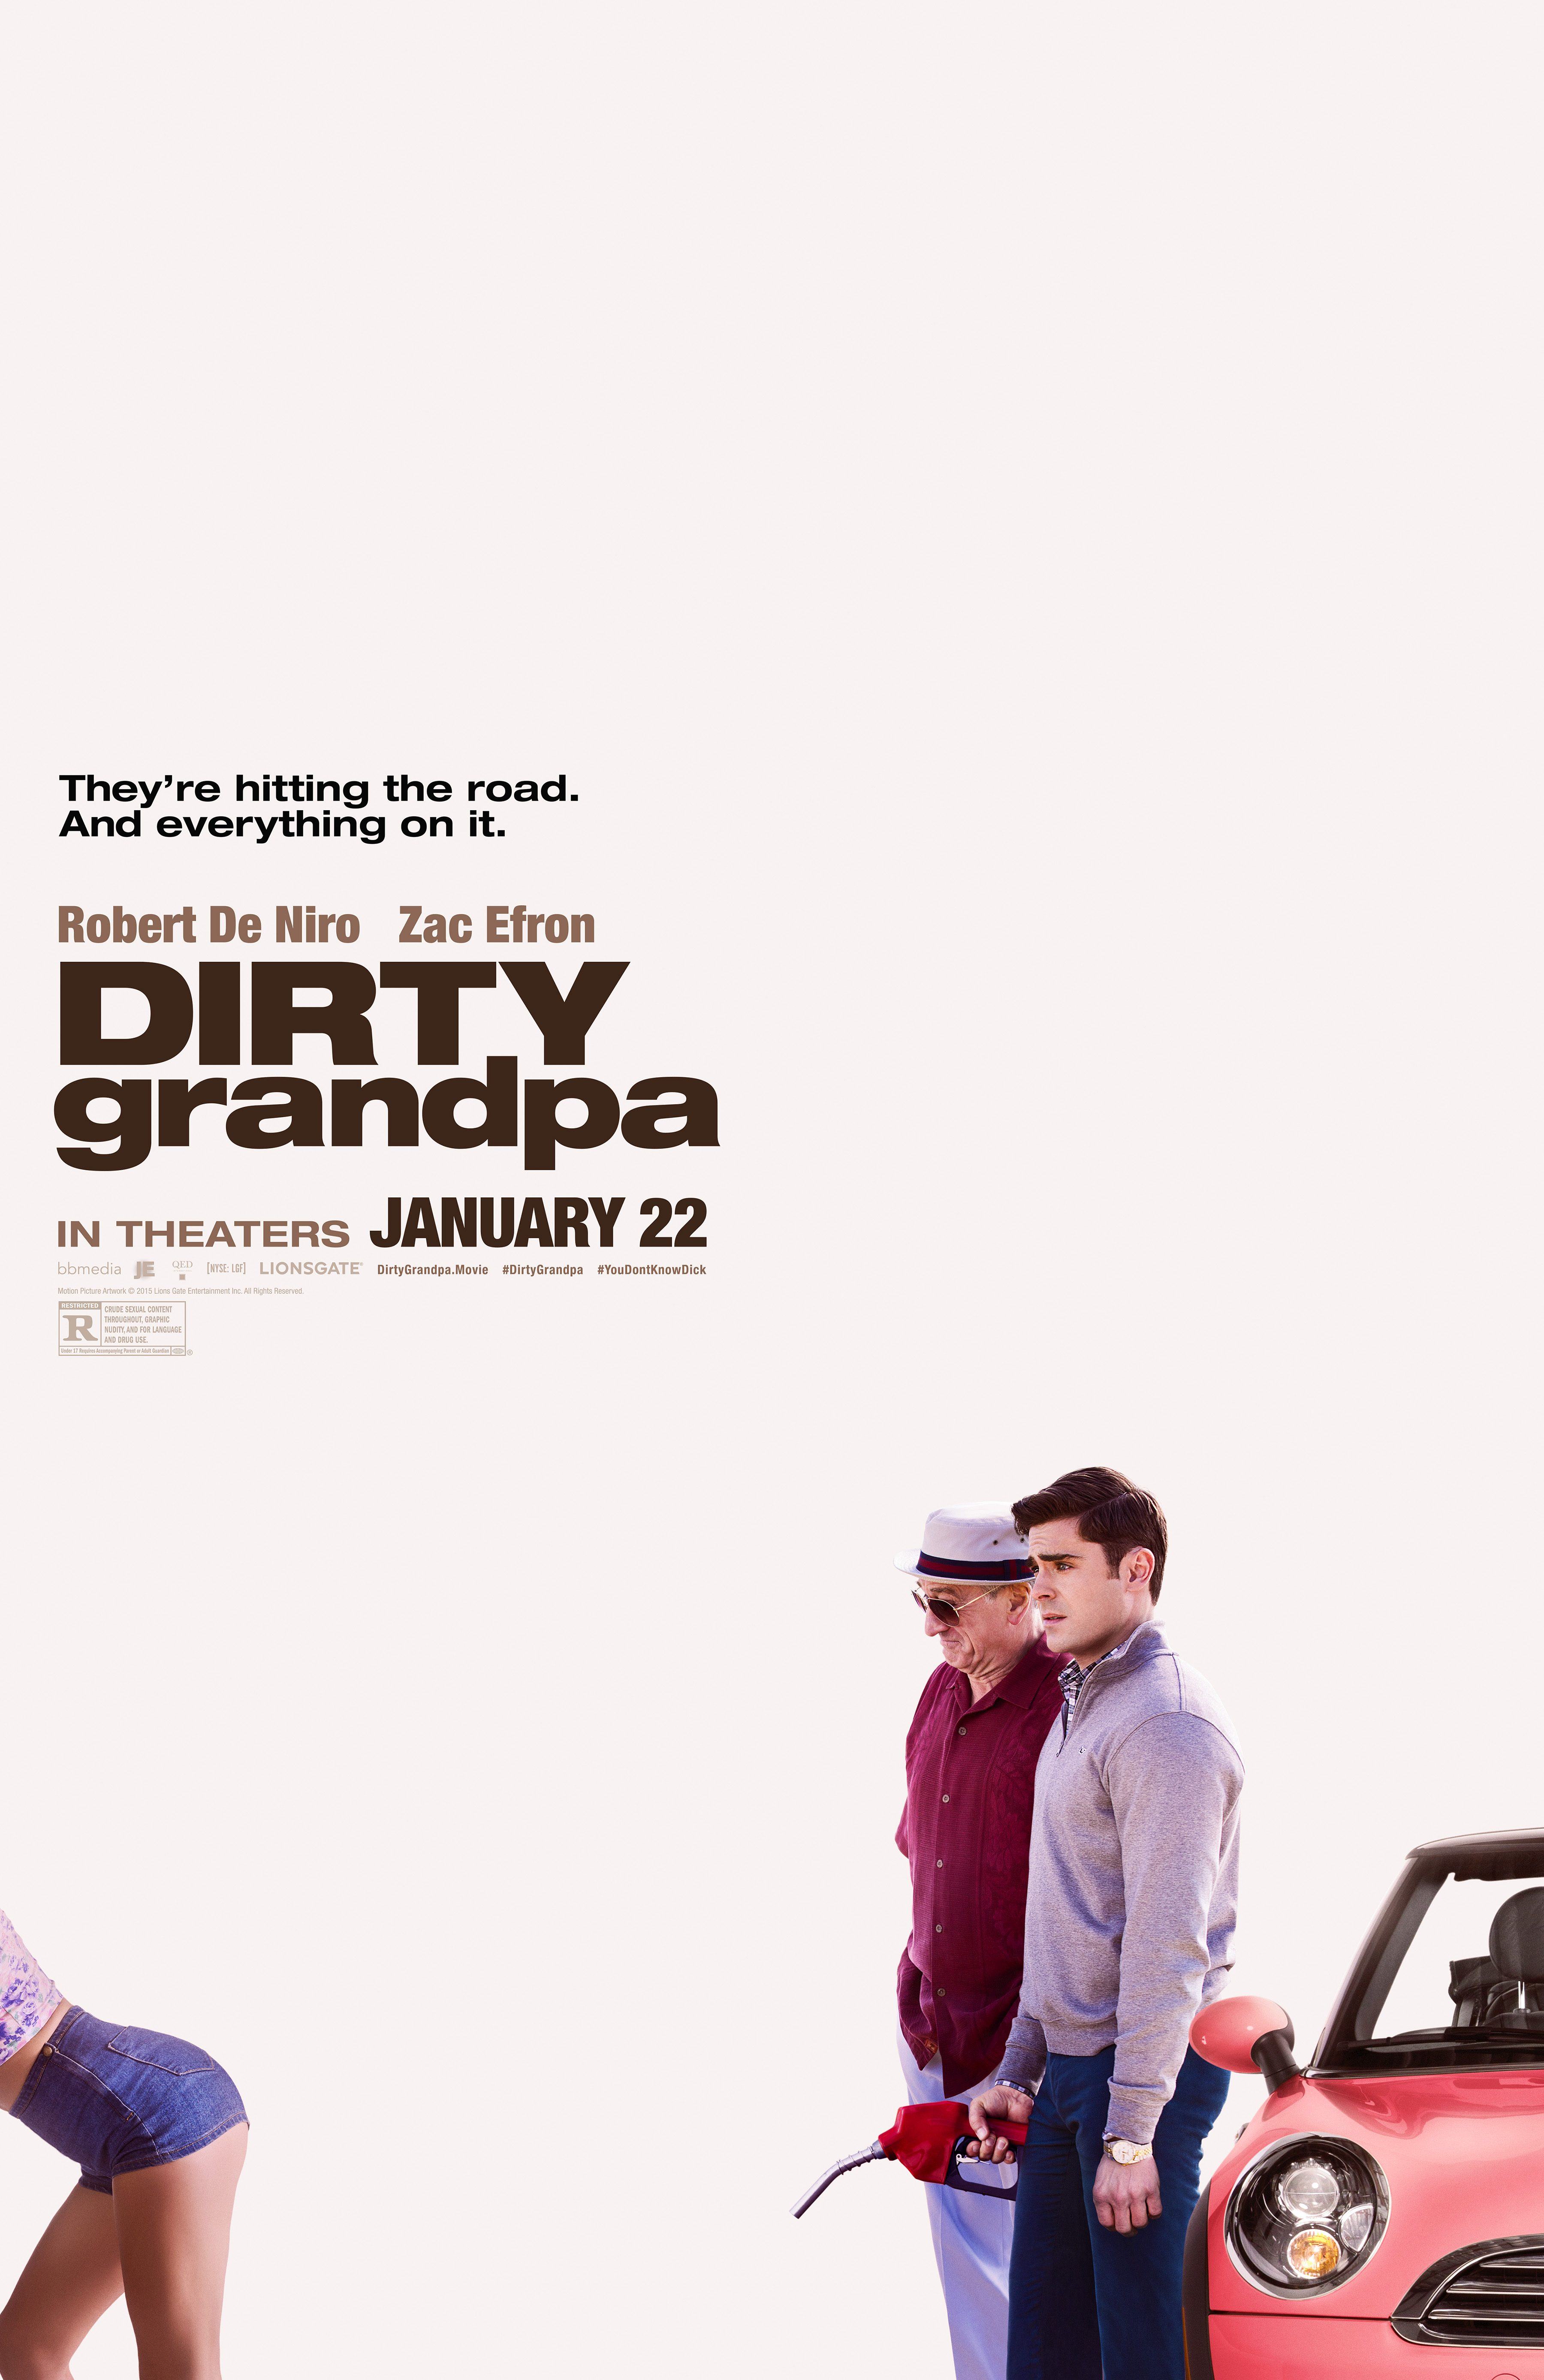 Dirty Grandpa, com Robert De Niro e Zac Efron ganha novo pôster e imagens